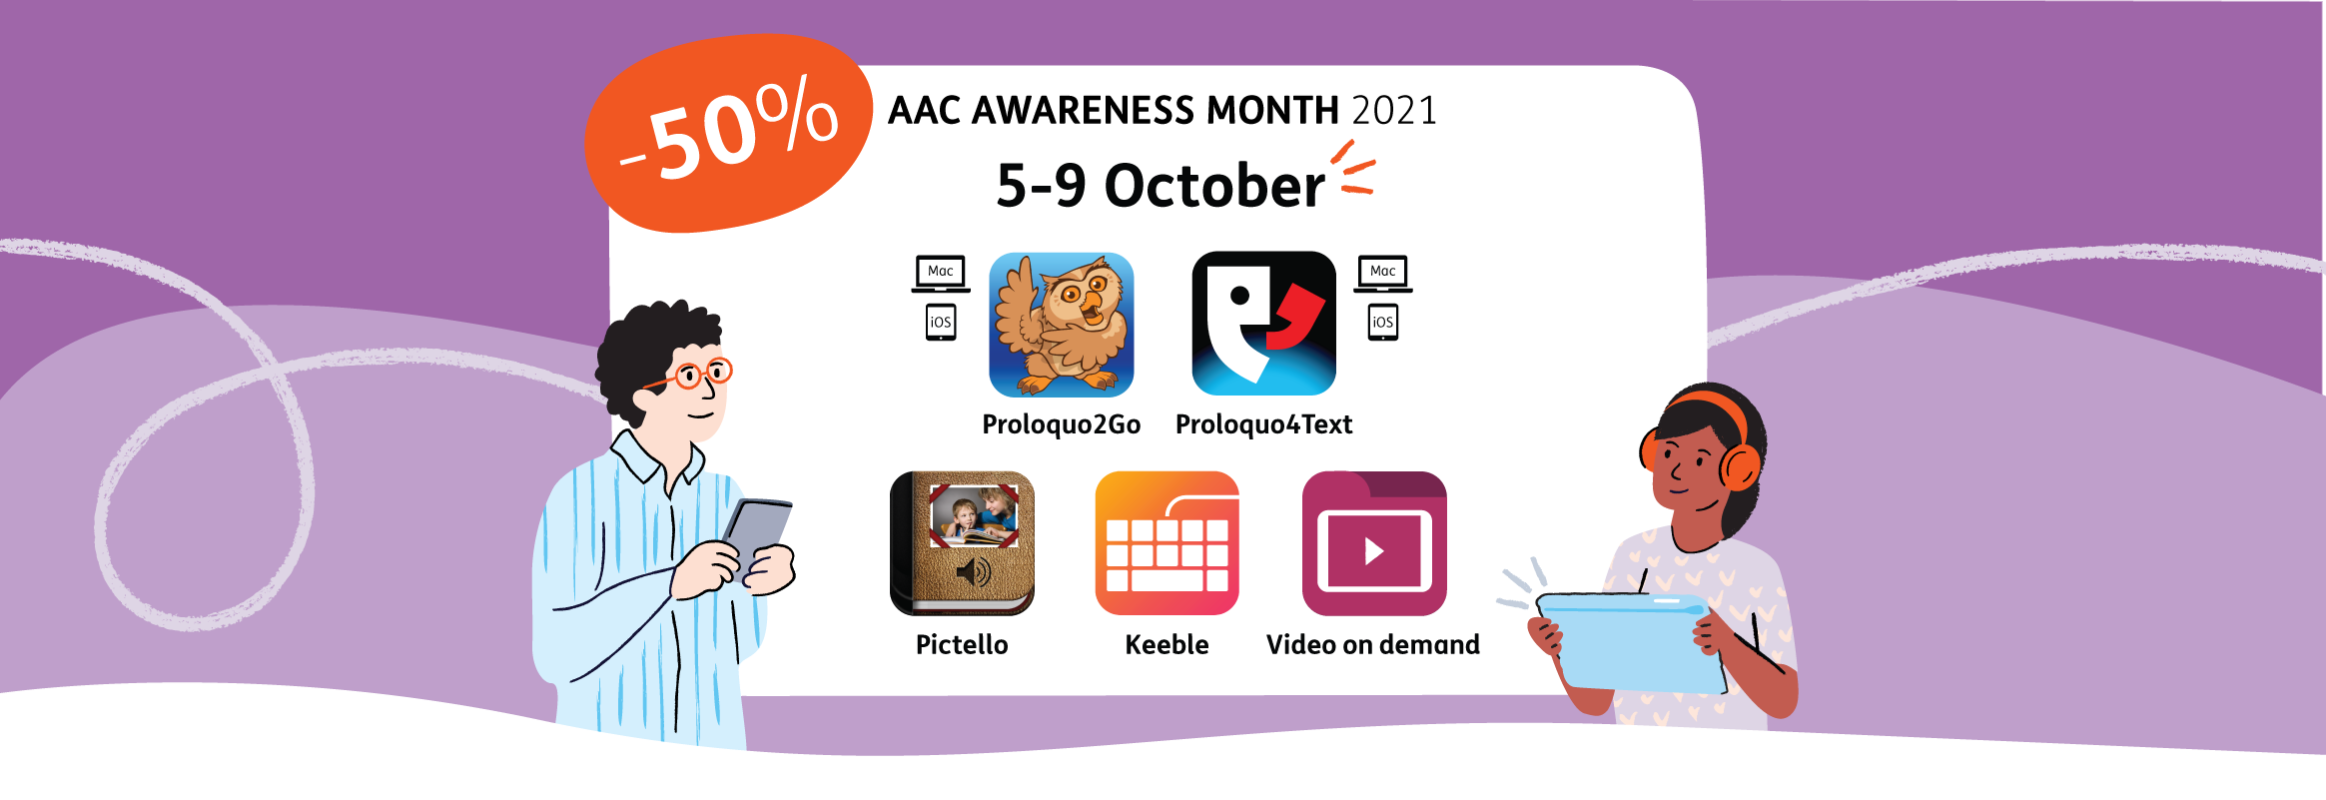 AAC Awareness Month 2021 discount